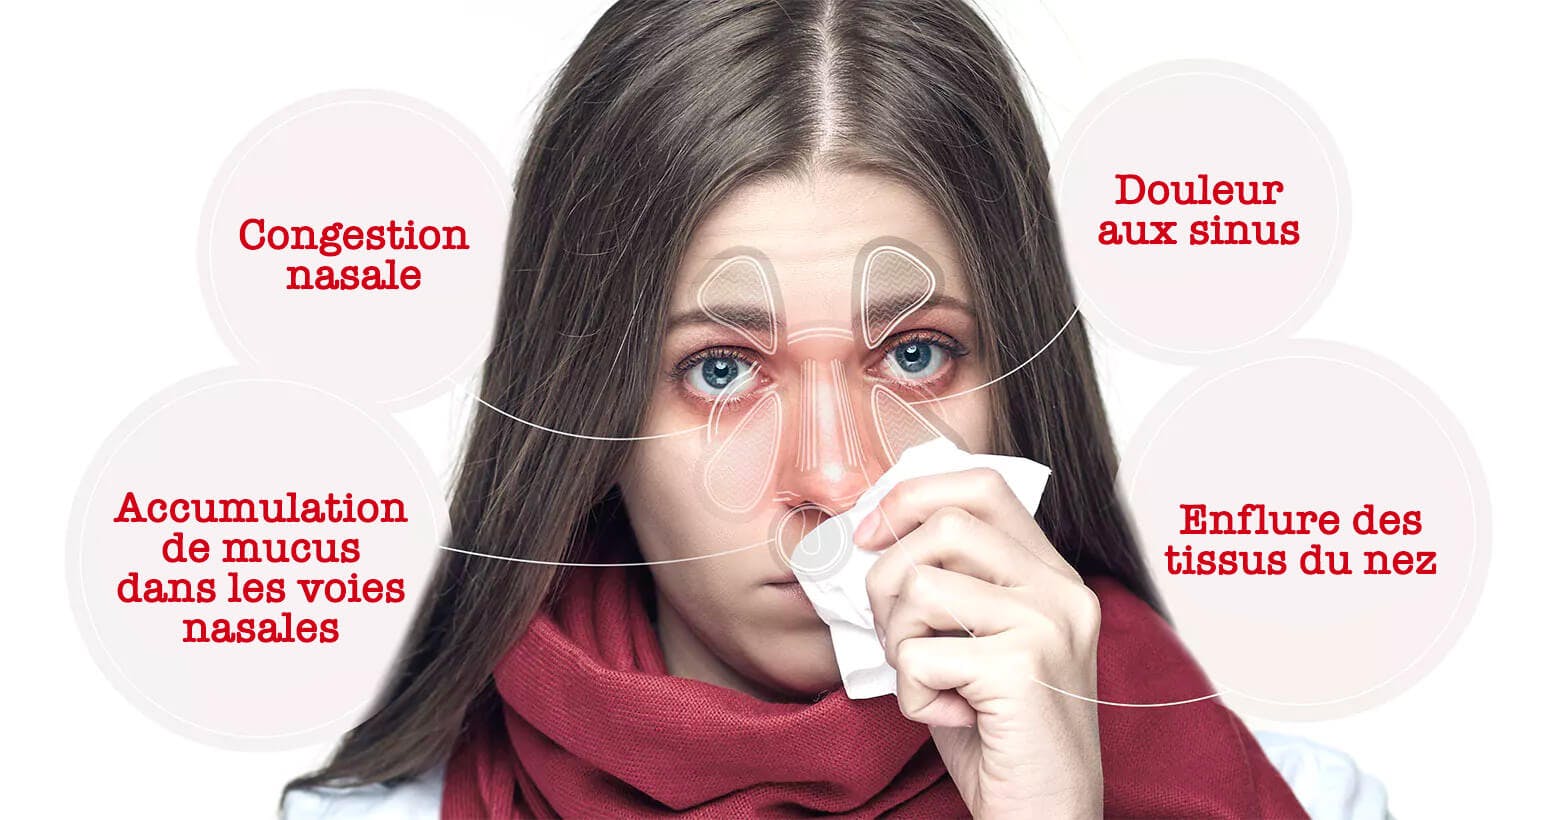 Femme atteinte de symptômes de la congestion nasale